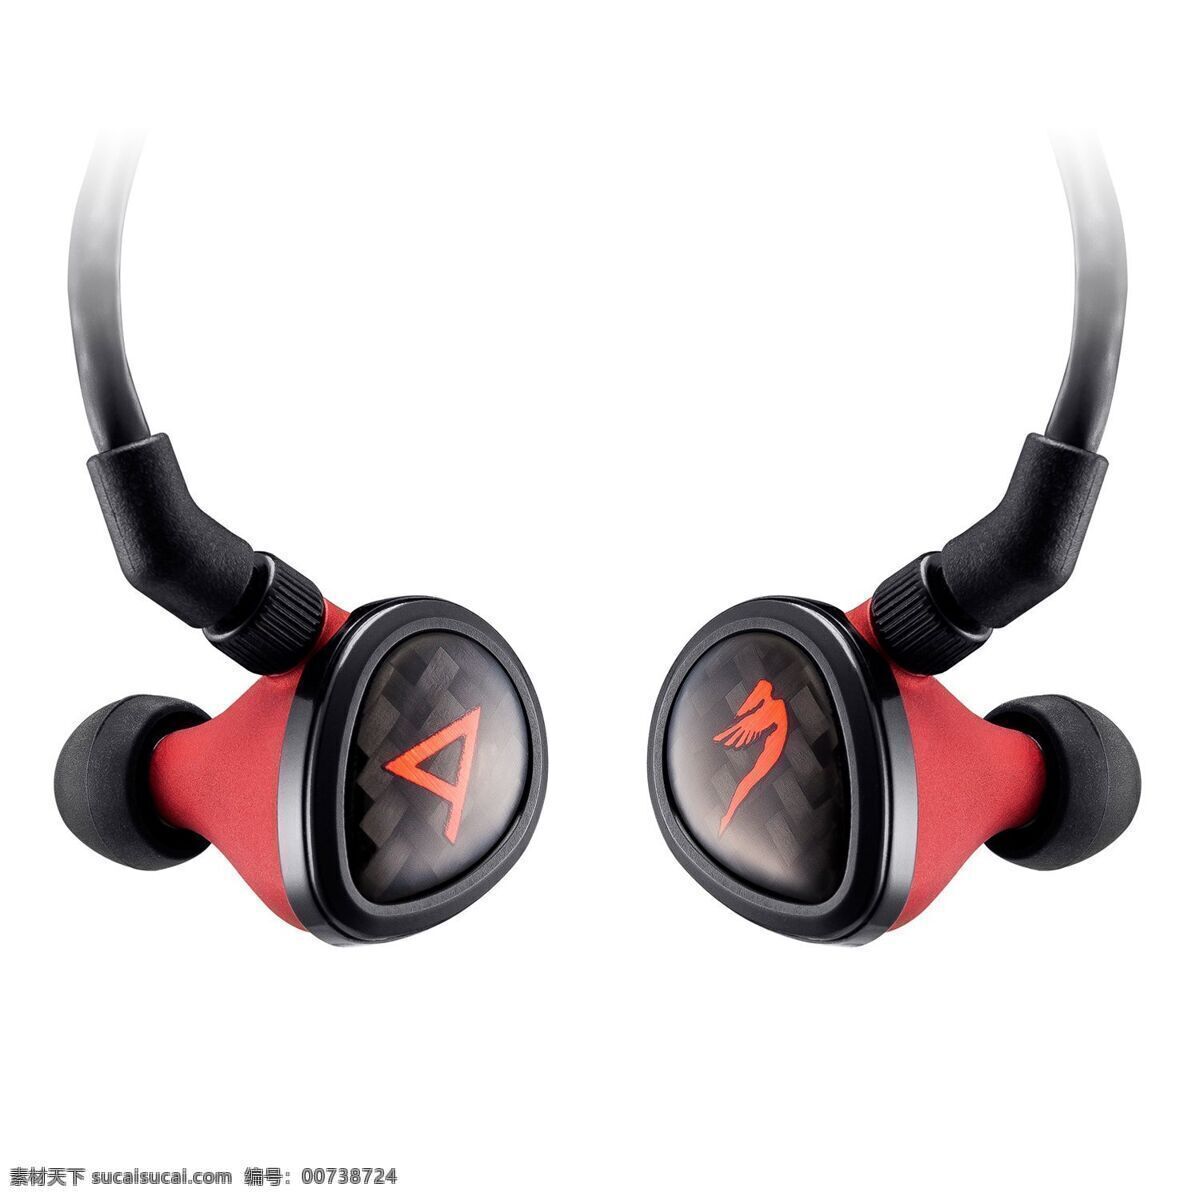 红 黑色 炫 酷 耳机 产品 红色 生活用品 数码 音乐